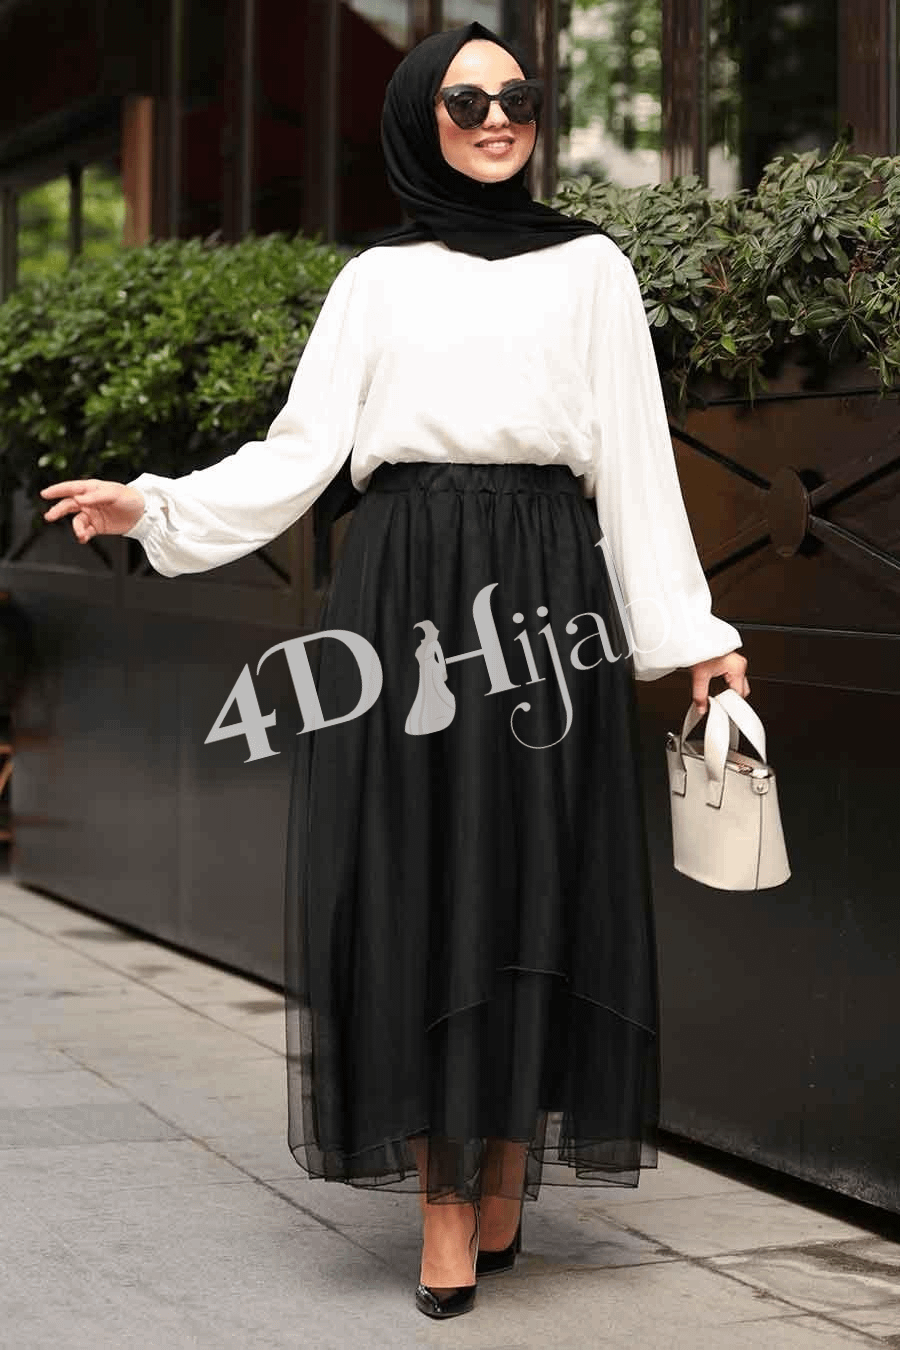 Turkish Black Skirt – 4D Hijabi